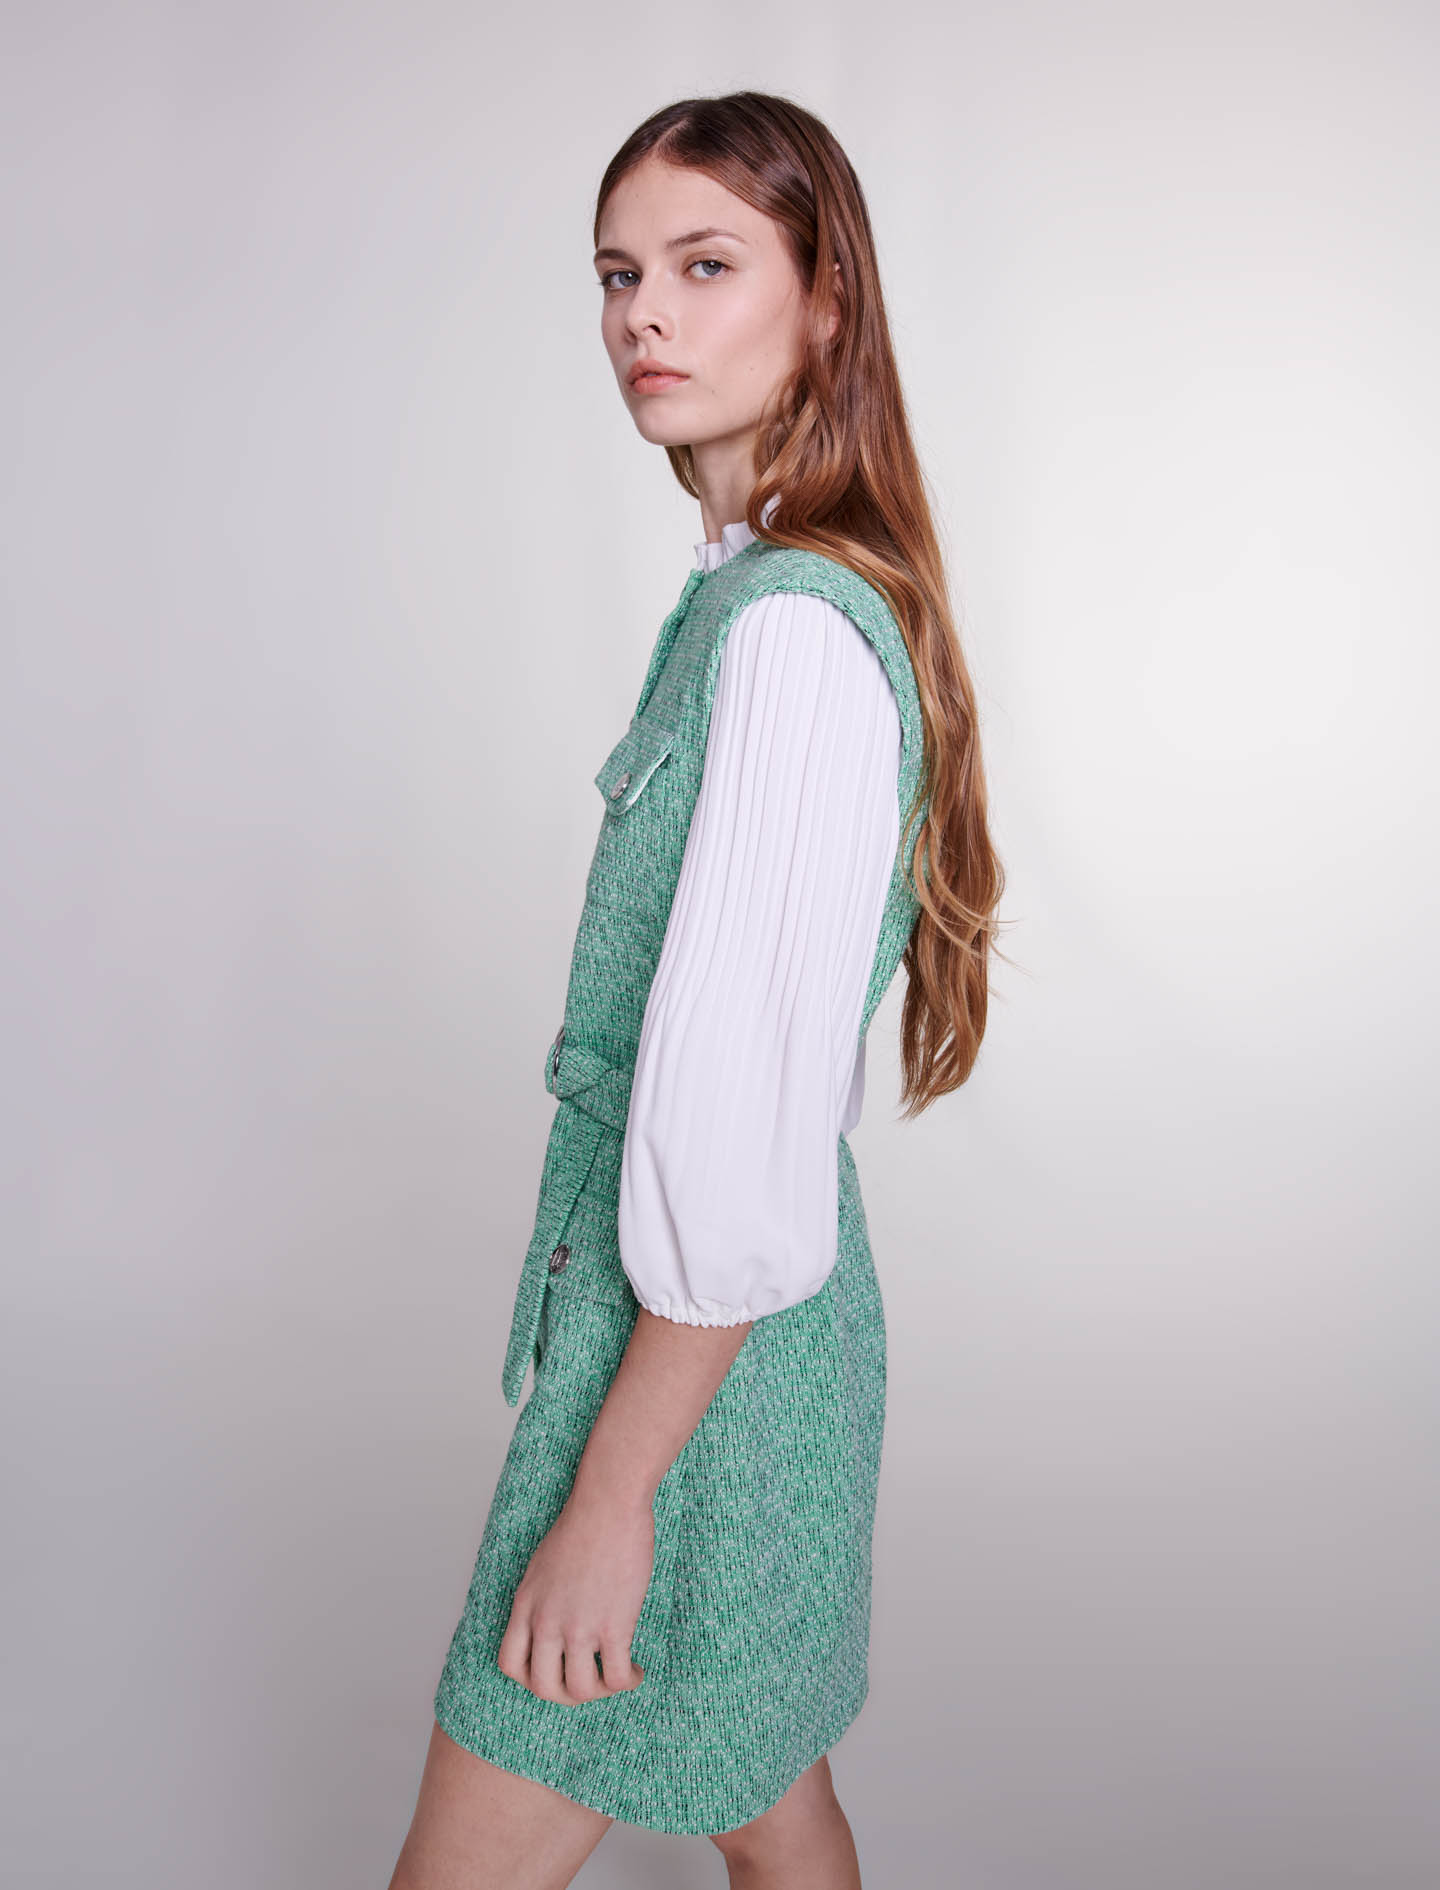 Dual Material Tweed Dress - Green